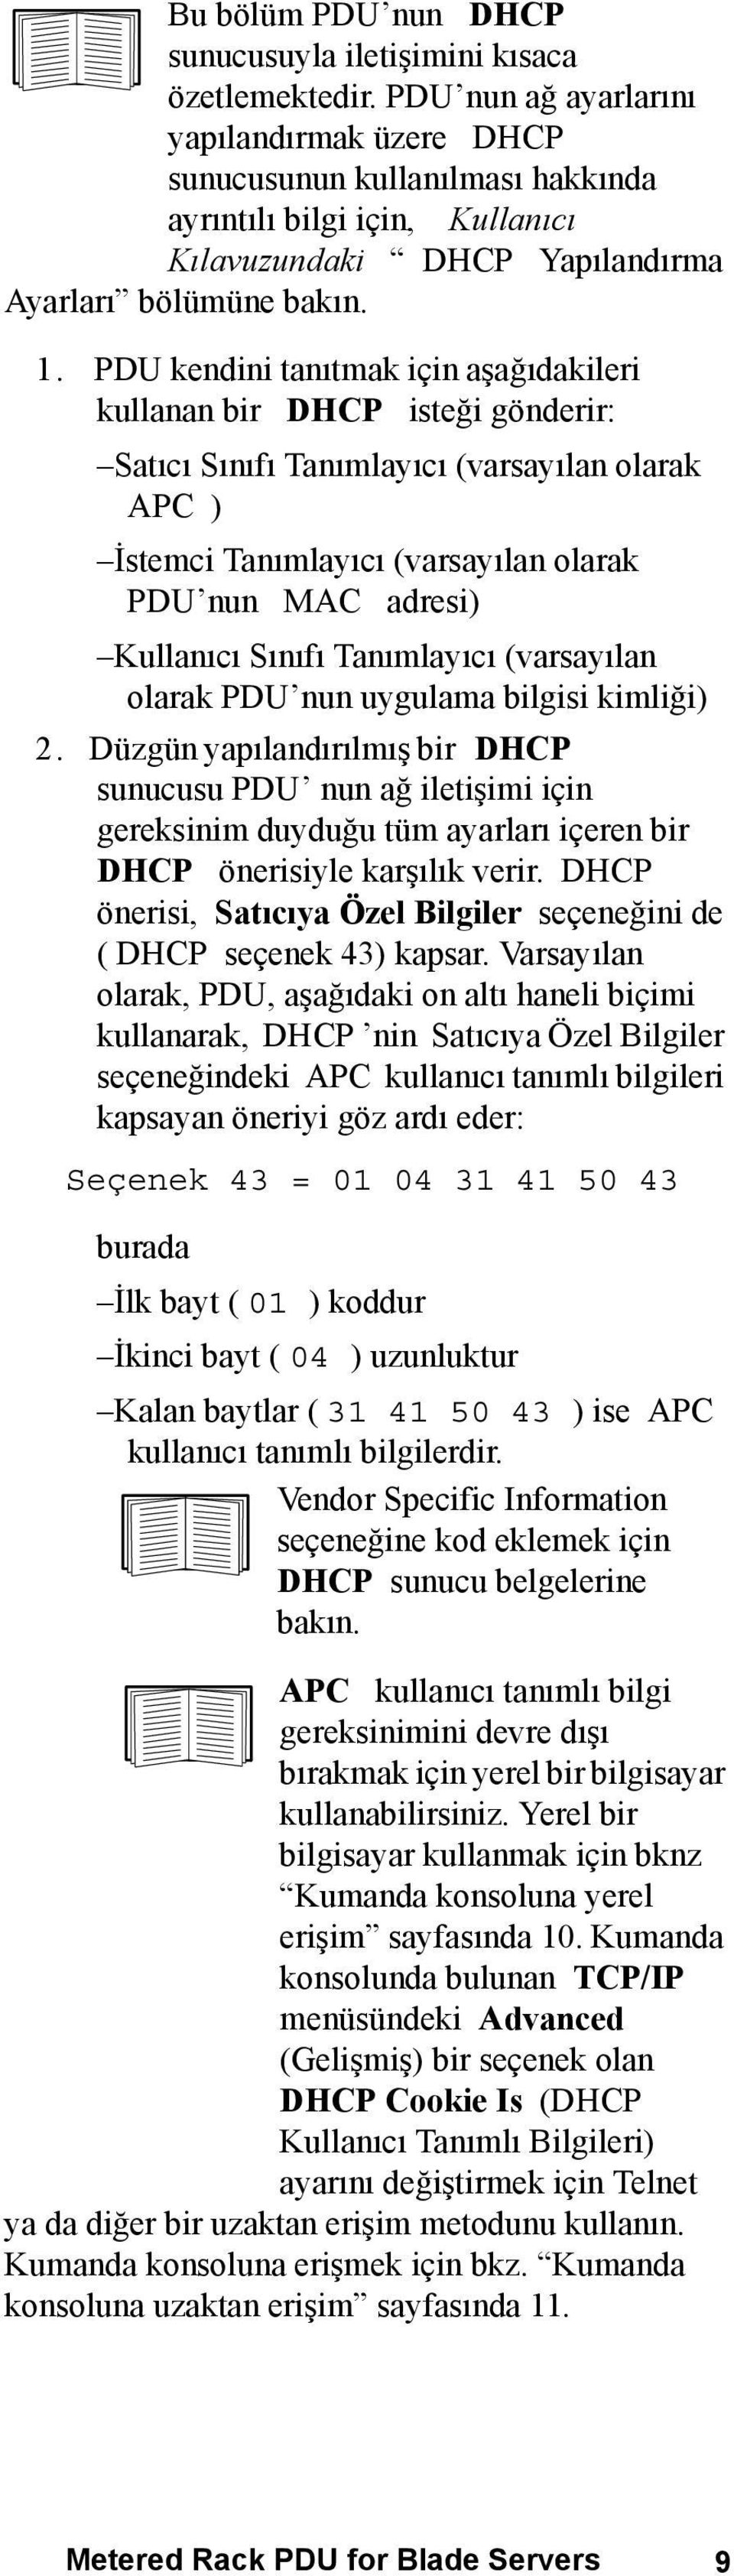 PDU kendini tanıtmak için aşağıdakileri kullanan bir DHCP isteği gönderir: Satıcı Sınıfı Tanımlayıcı (varsayılan olarak APC ) İstemci Tanımlayıcı (varsayılan olarak PDU nun MAC adresi) Kullanıcı